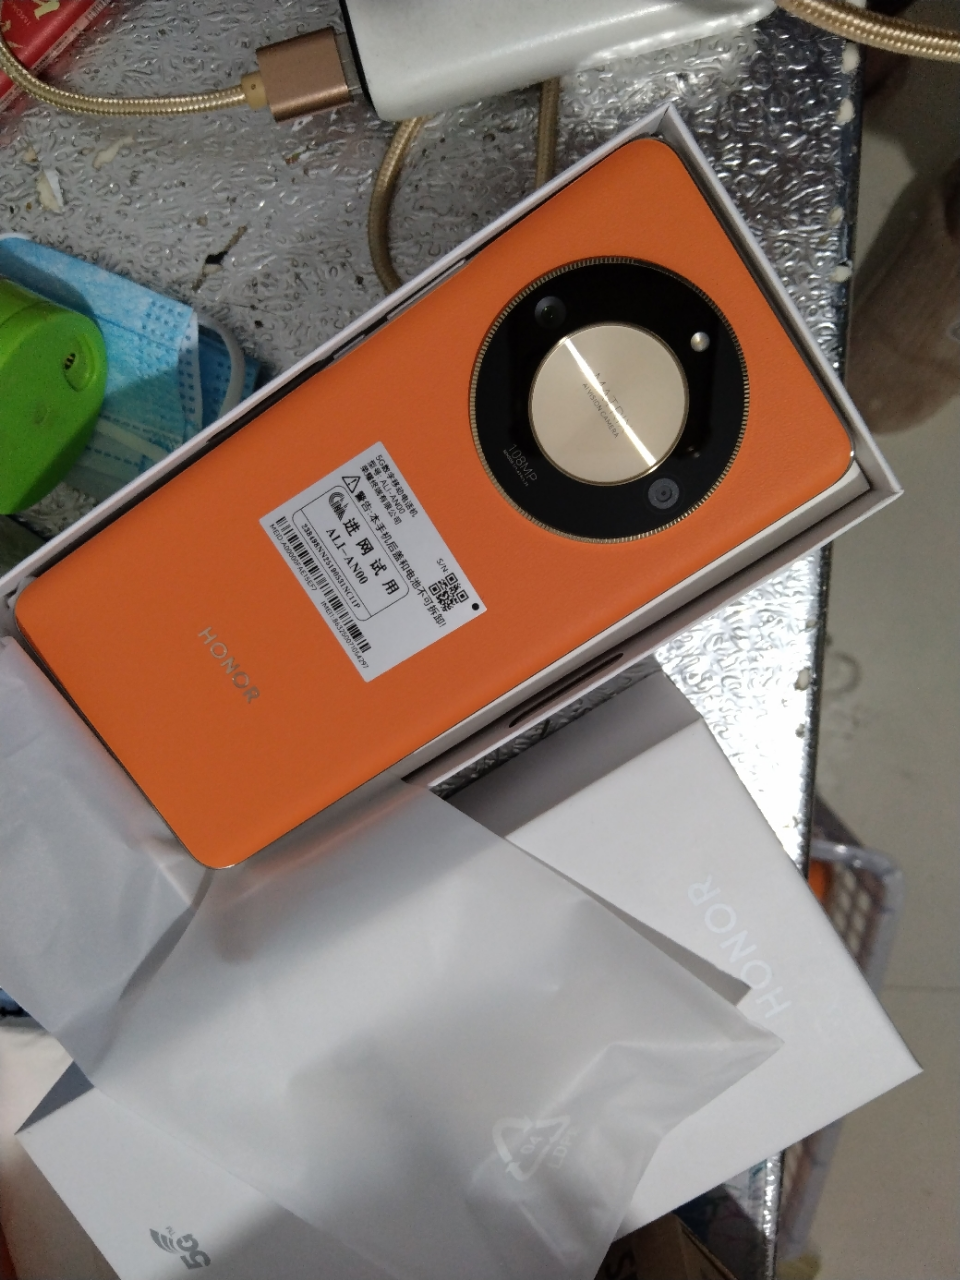 荣耀X50 16GB+512GB 燃橙色 SGS整机五星抗跌耐摔认证 5800mAh超耐久长续航 第一代骁龙6移动平台 一亿像素大底主摄 120Hz智能高刷 5G手机晒单图